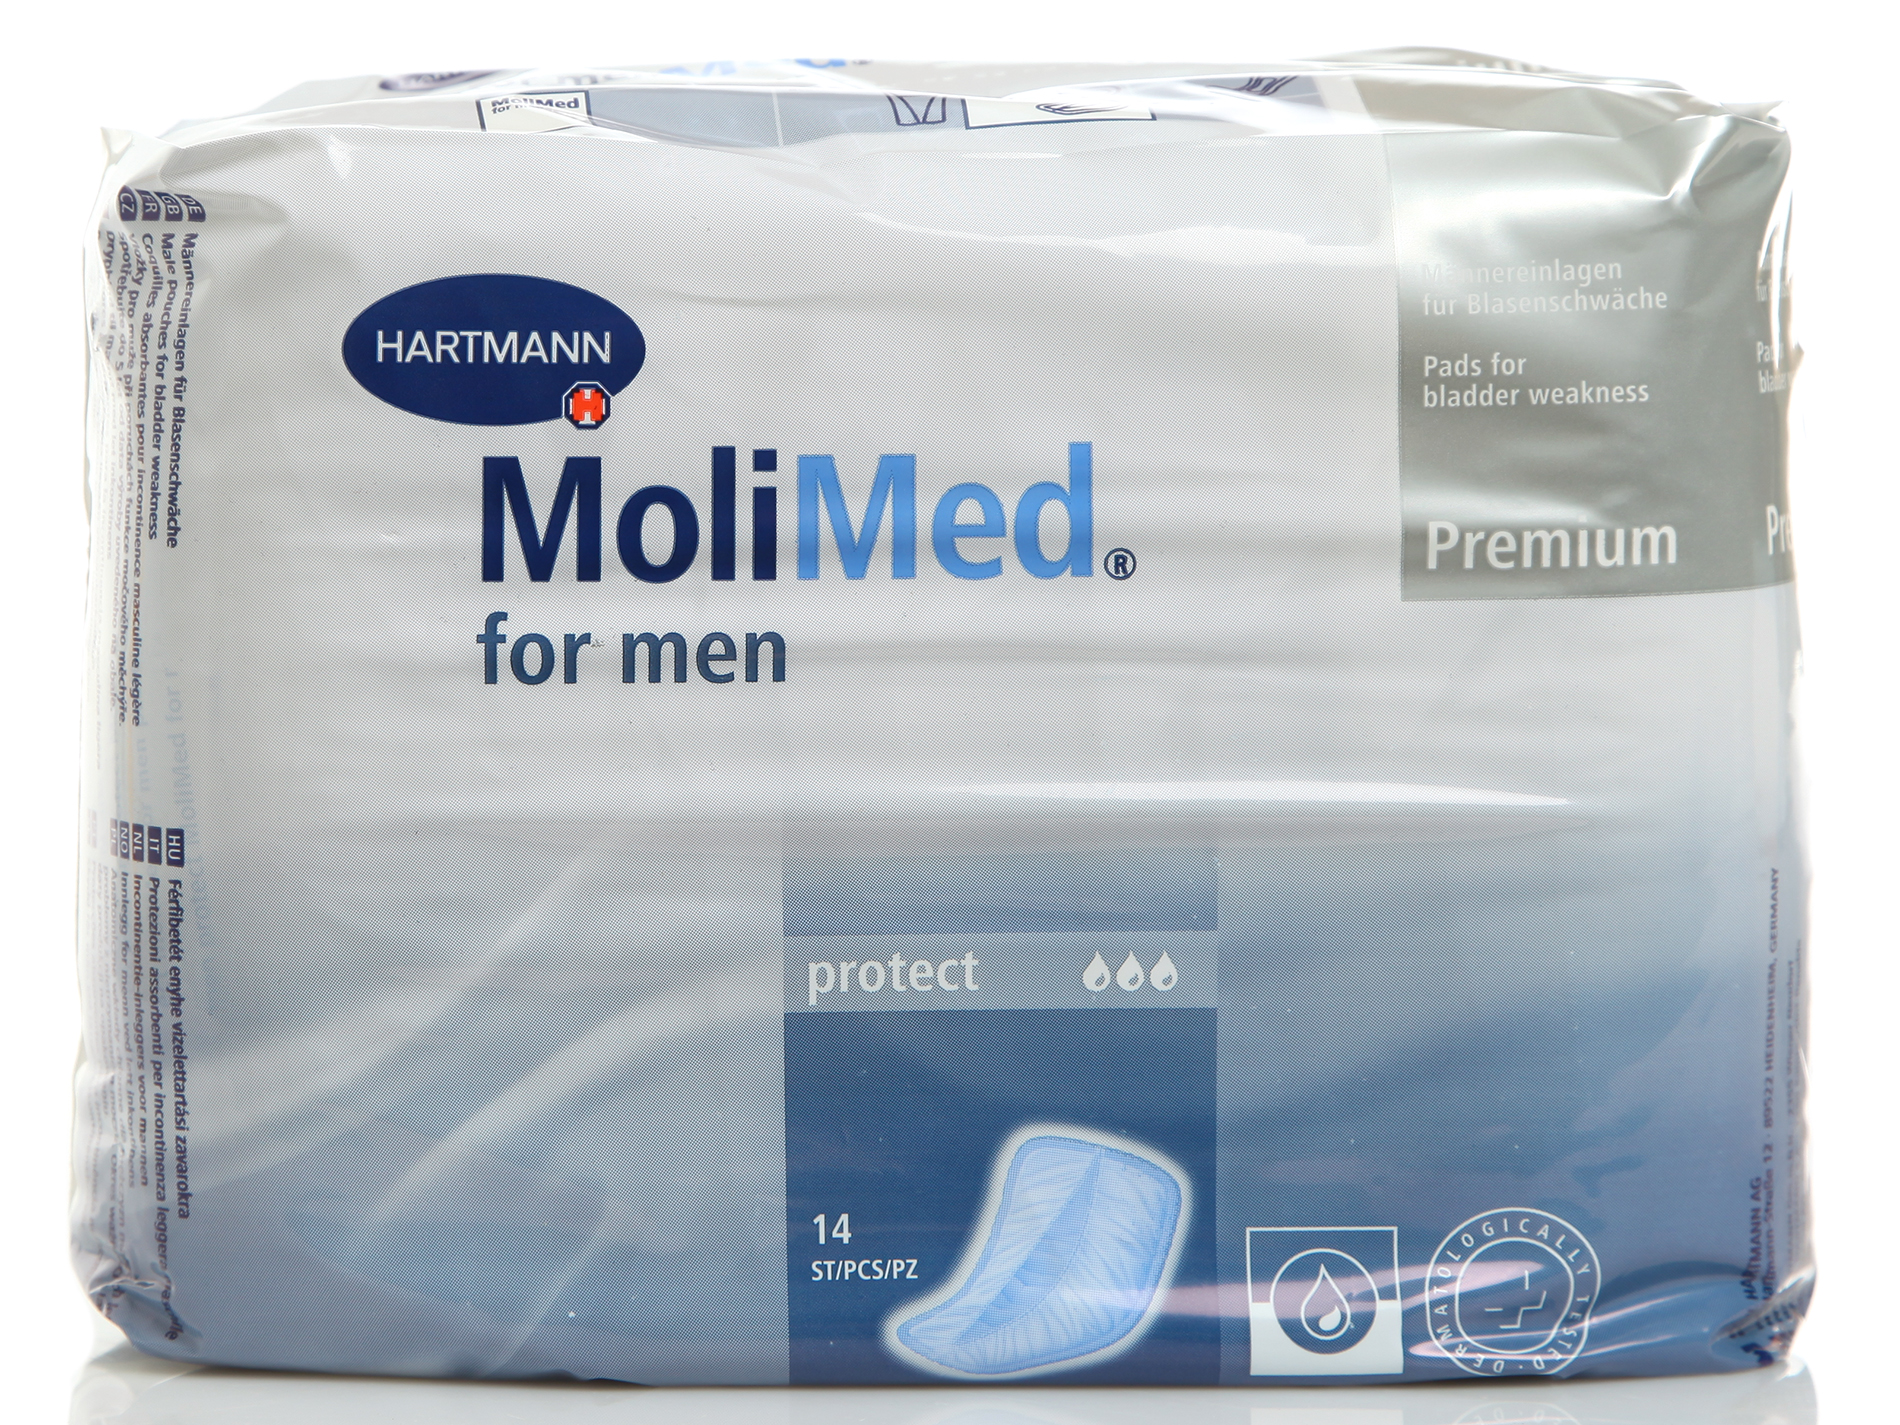 Урологические прокладки Hartmann MOLIMED Premium for men protect 1687057